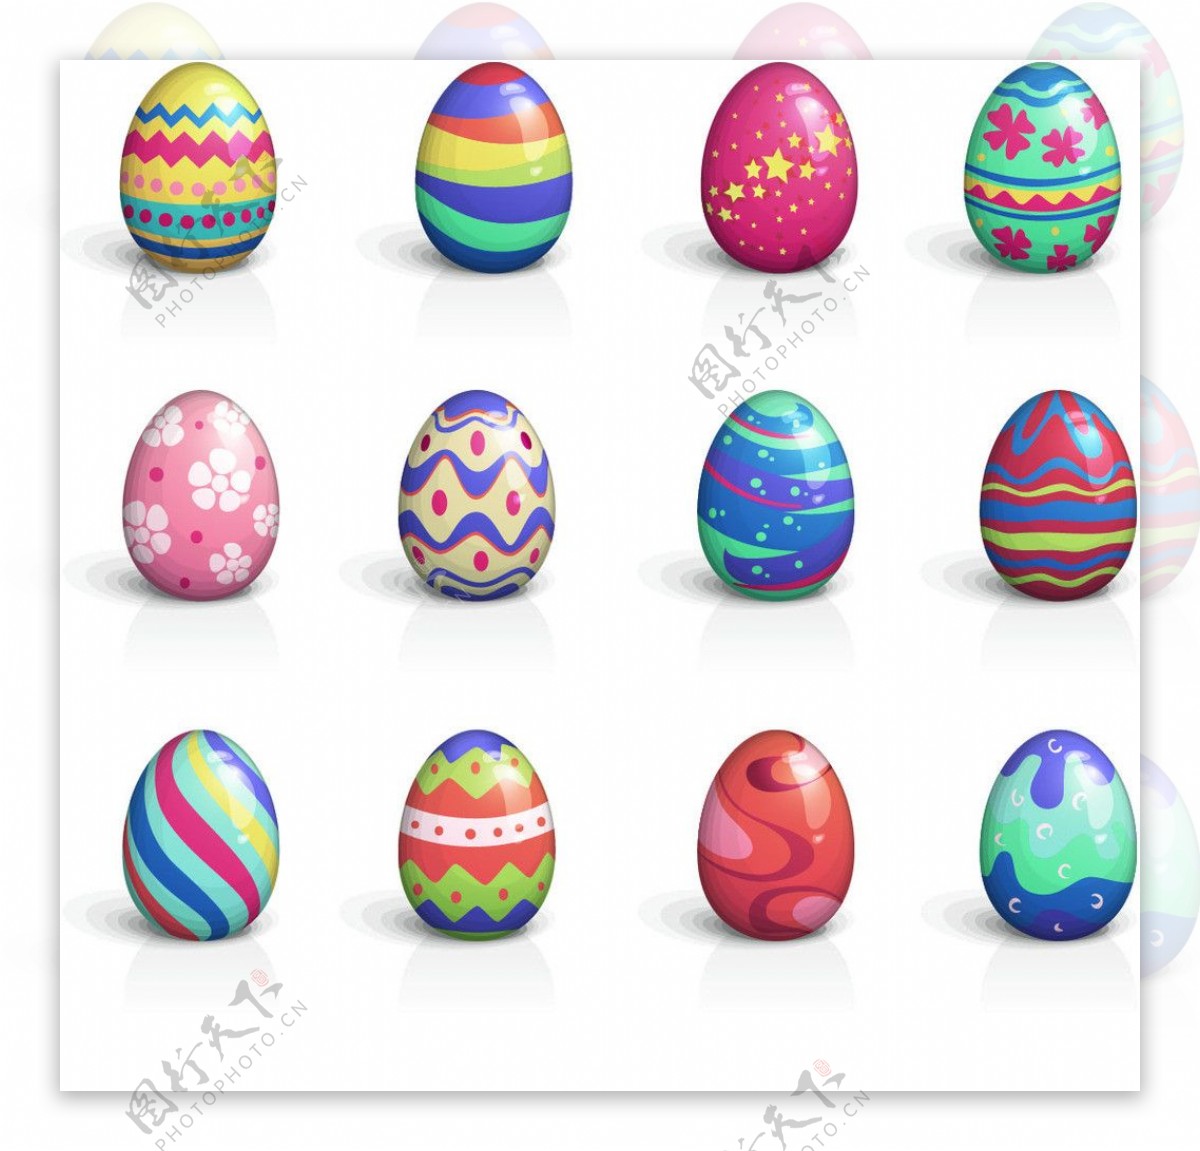 彩绘鸡蛋矢量图图片